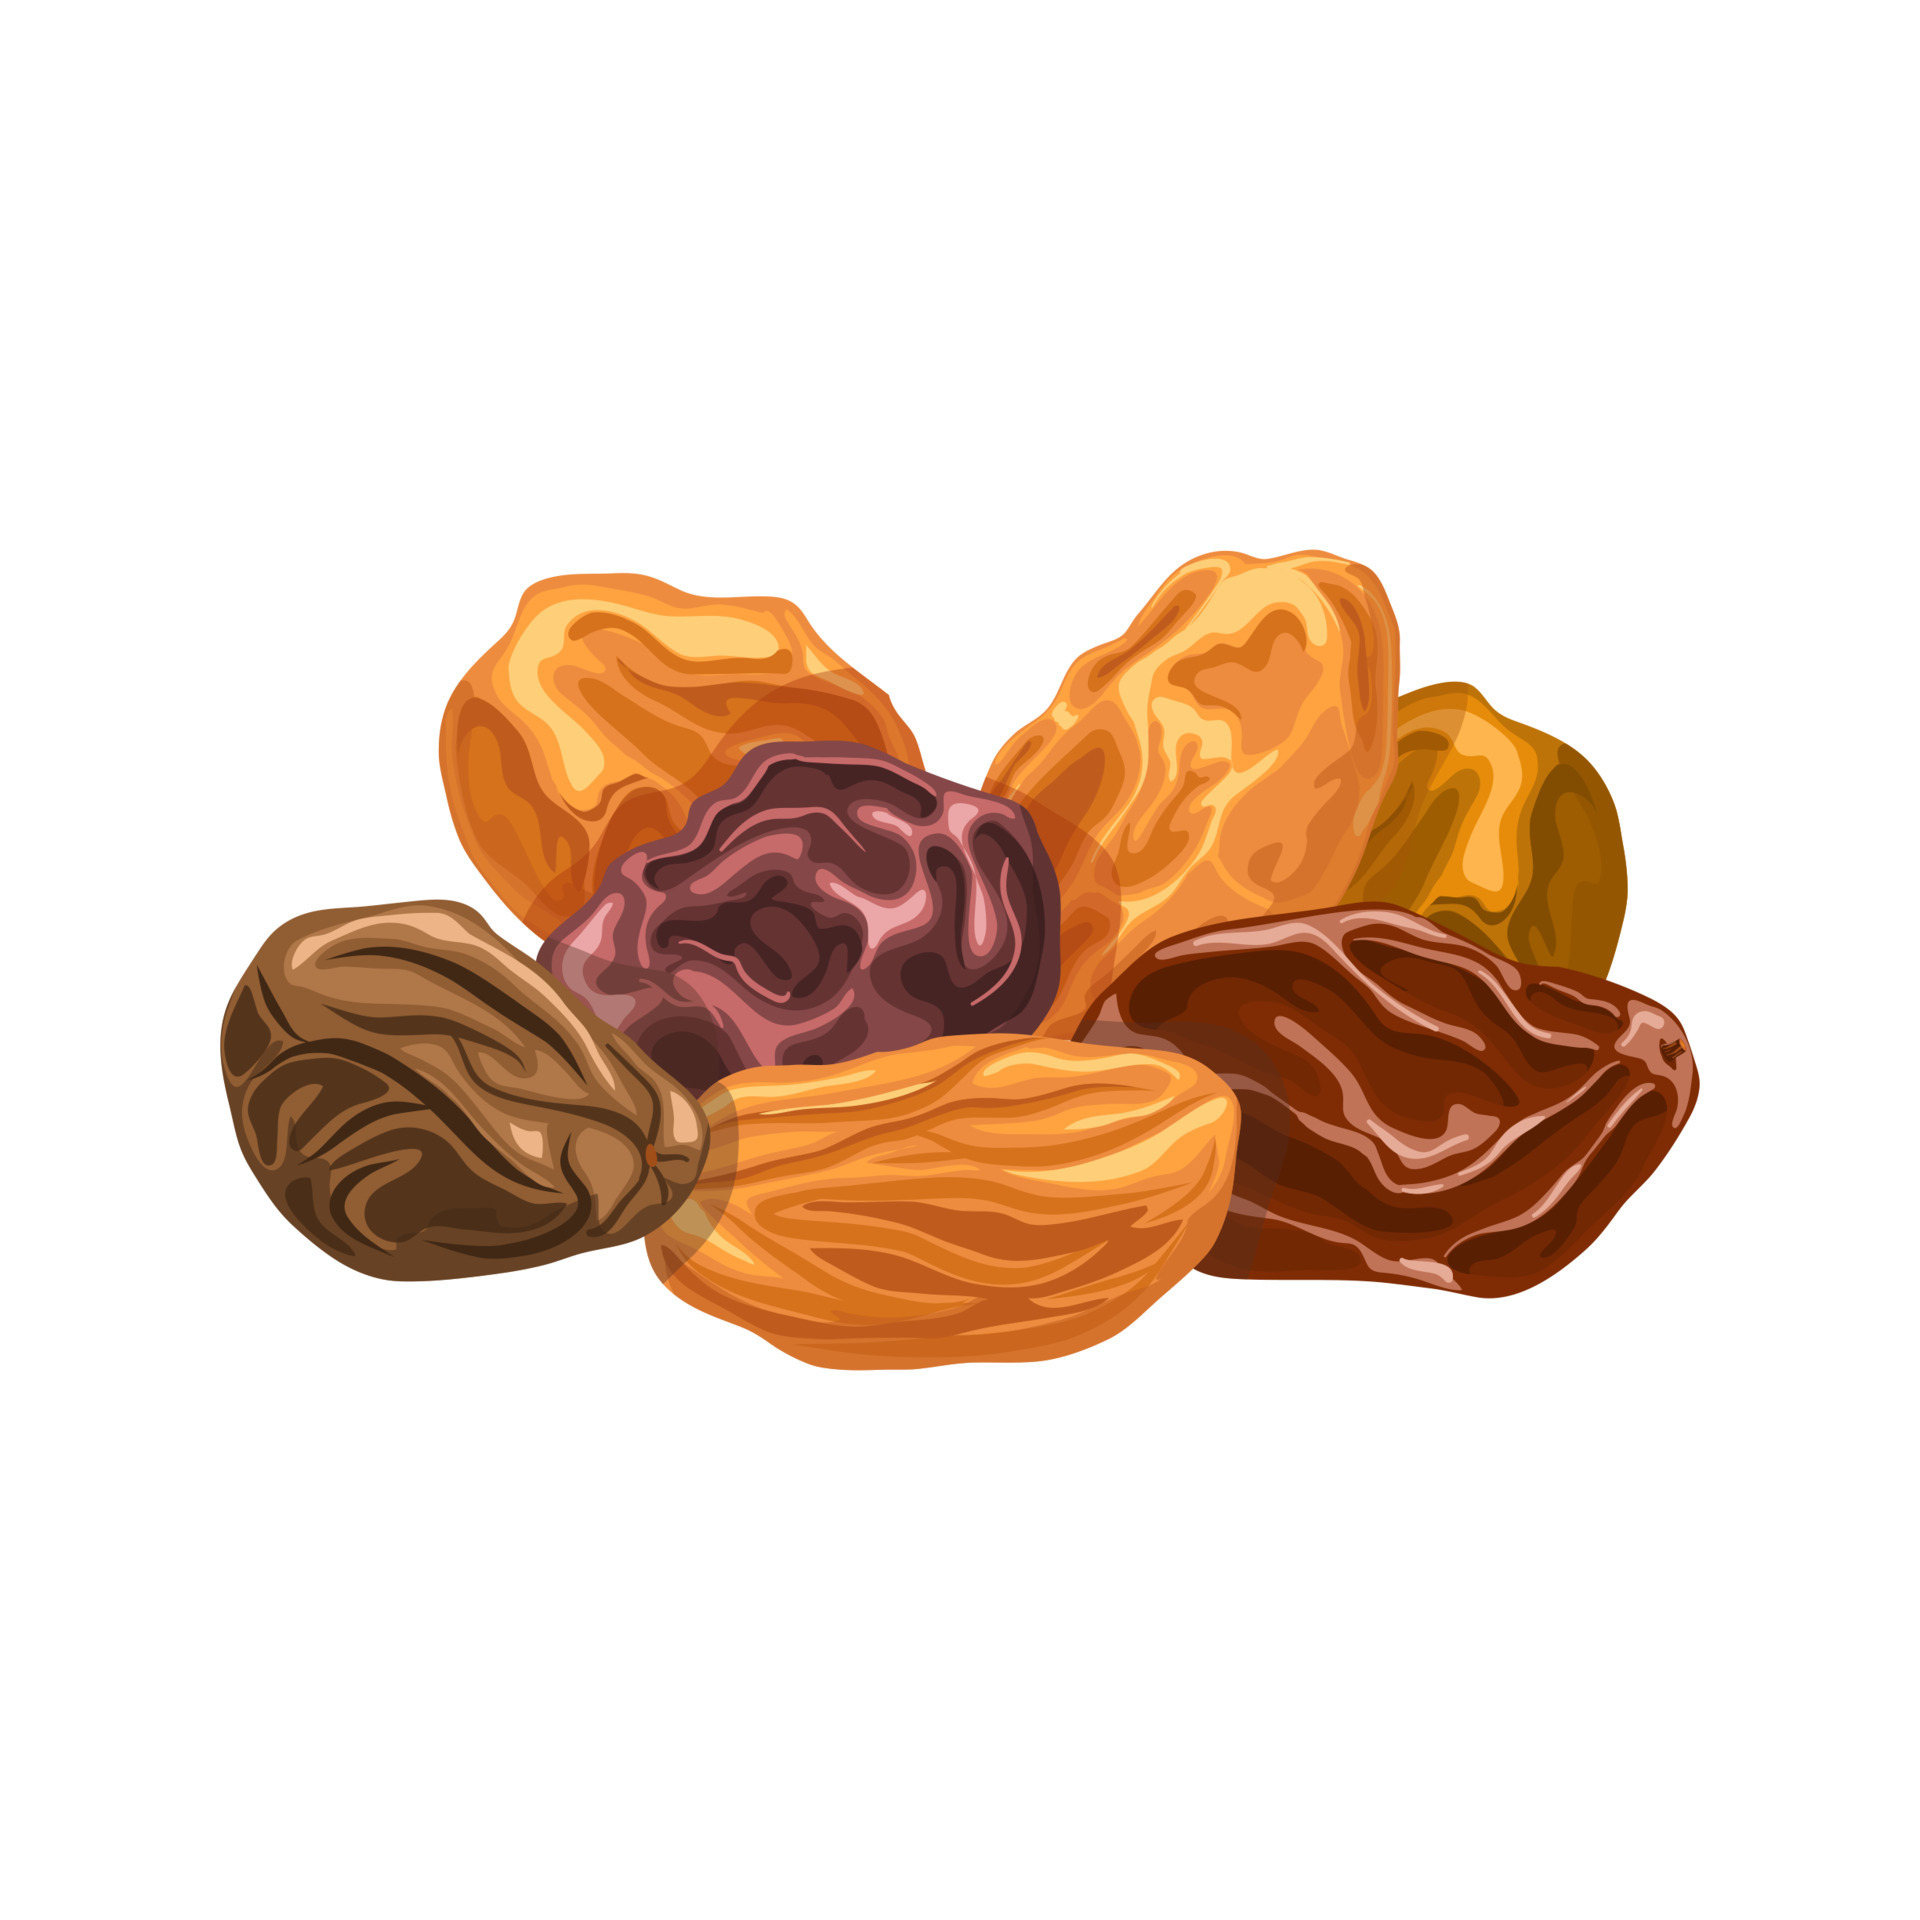 raisins dried fruit cartoon vector illustration 17587702 Vector Art at ...